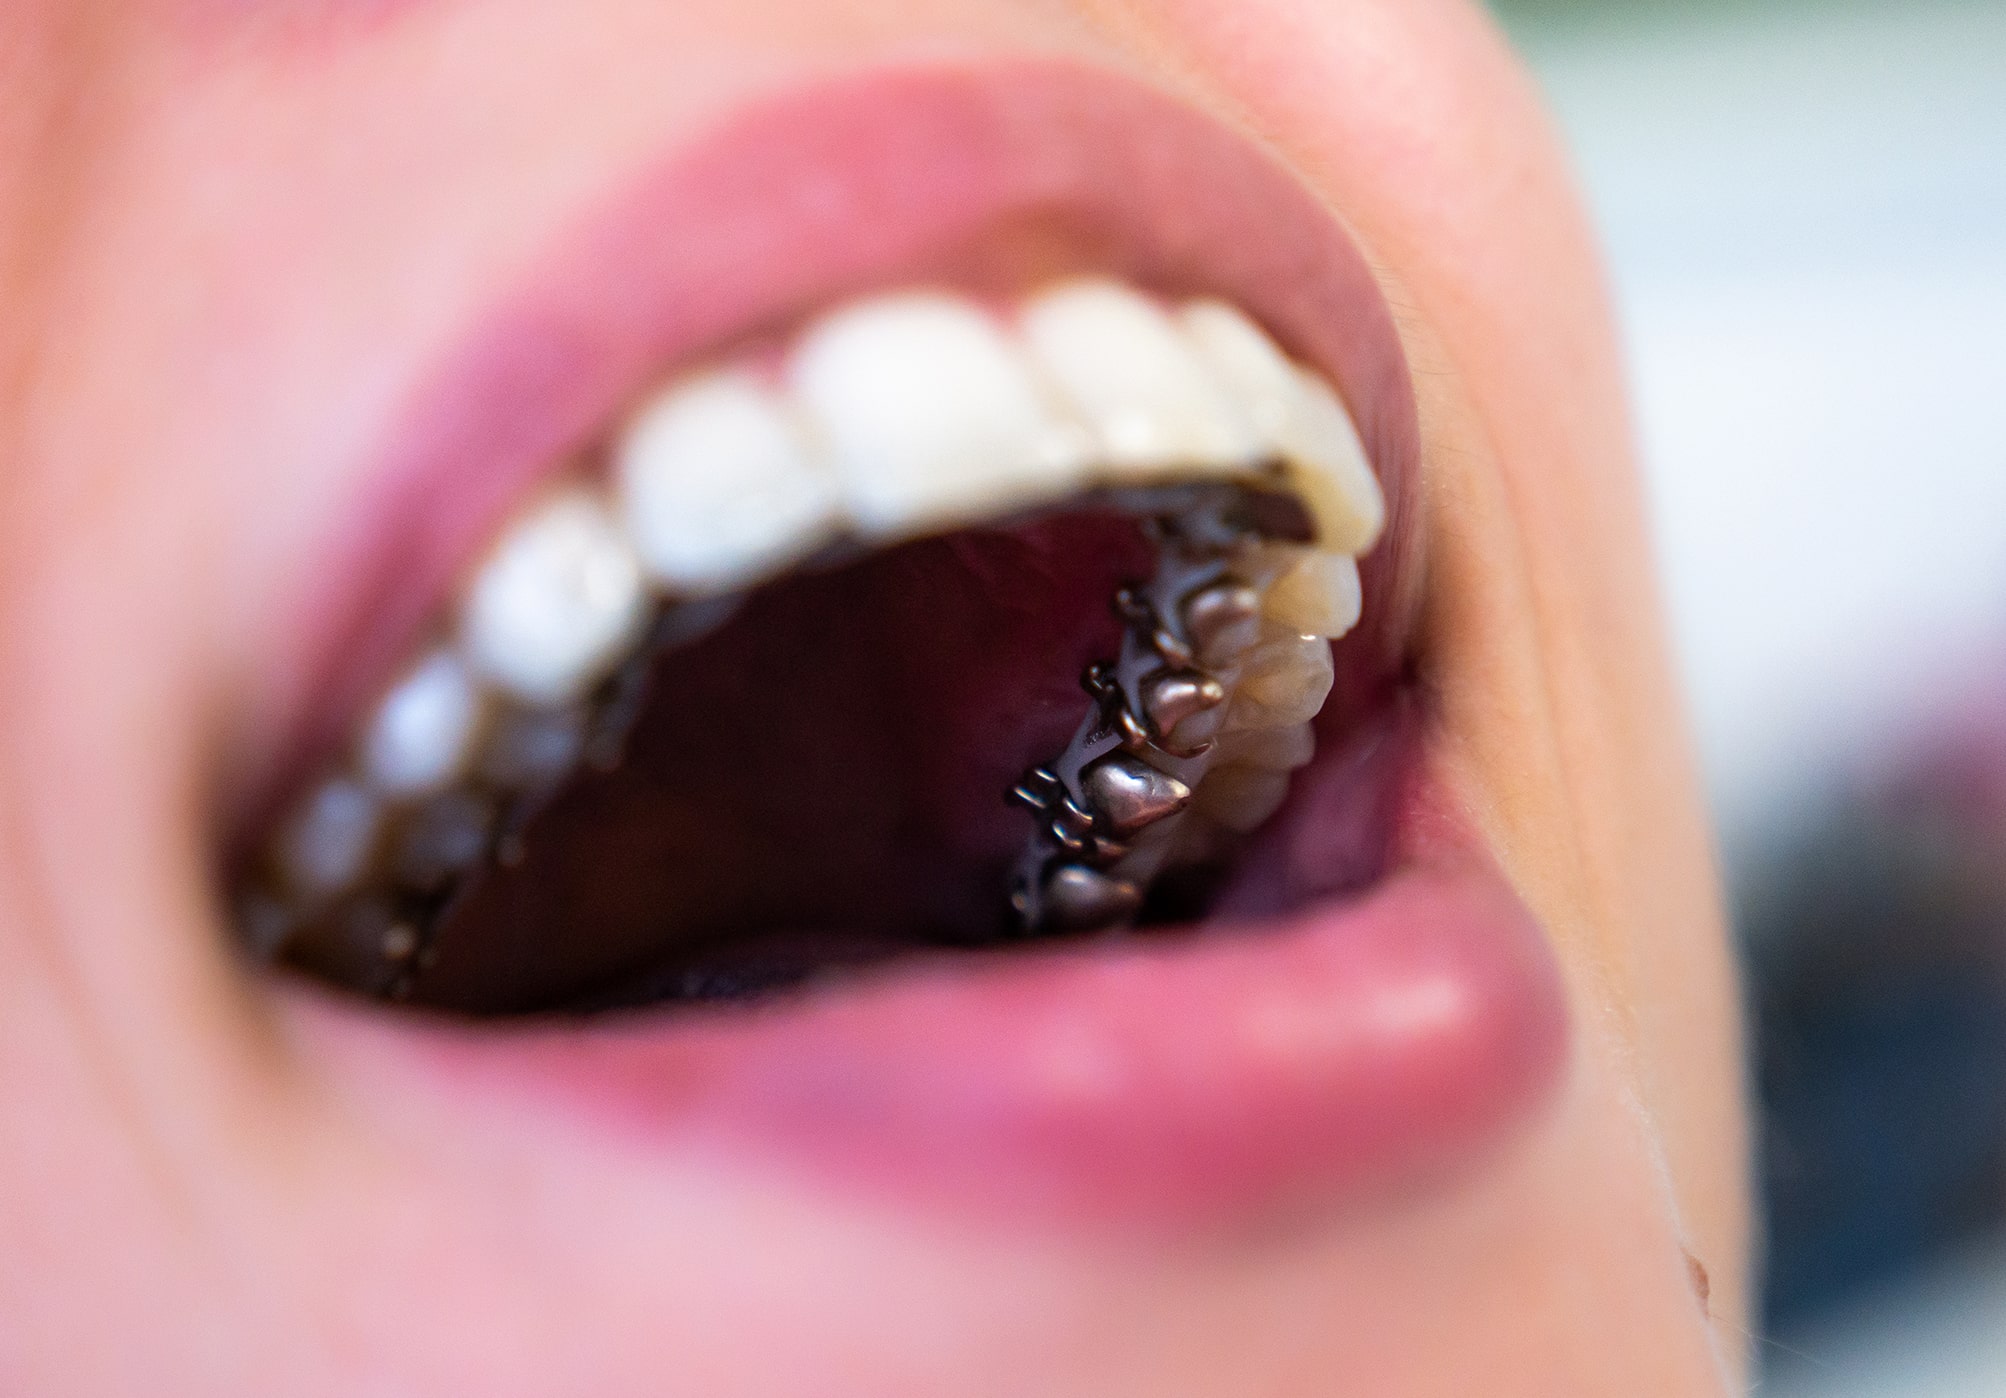 Detalle de ortodoncia lingual en boca de paciente.